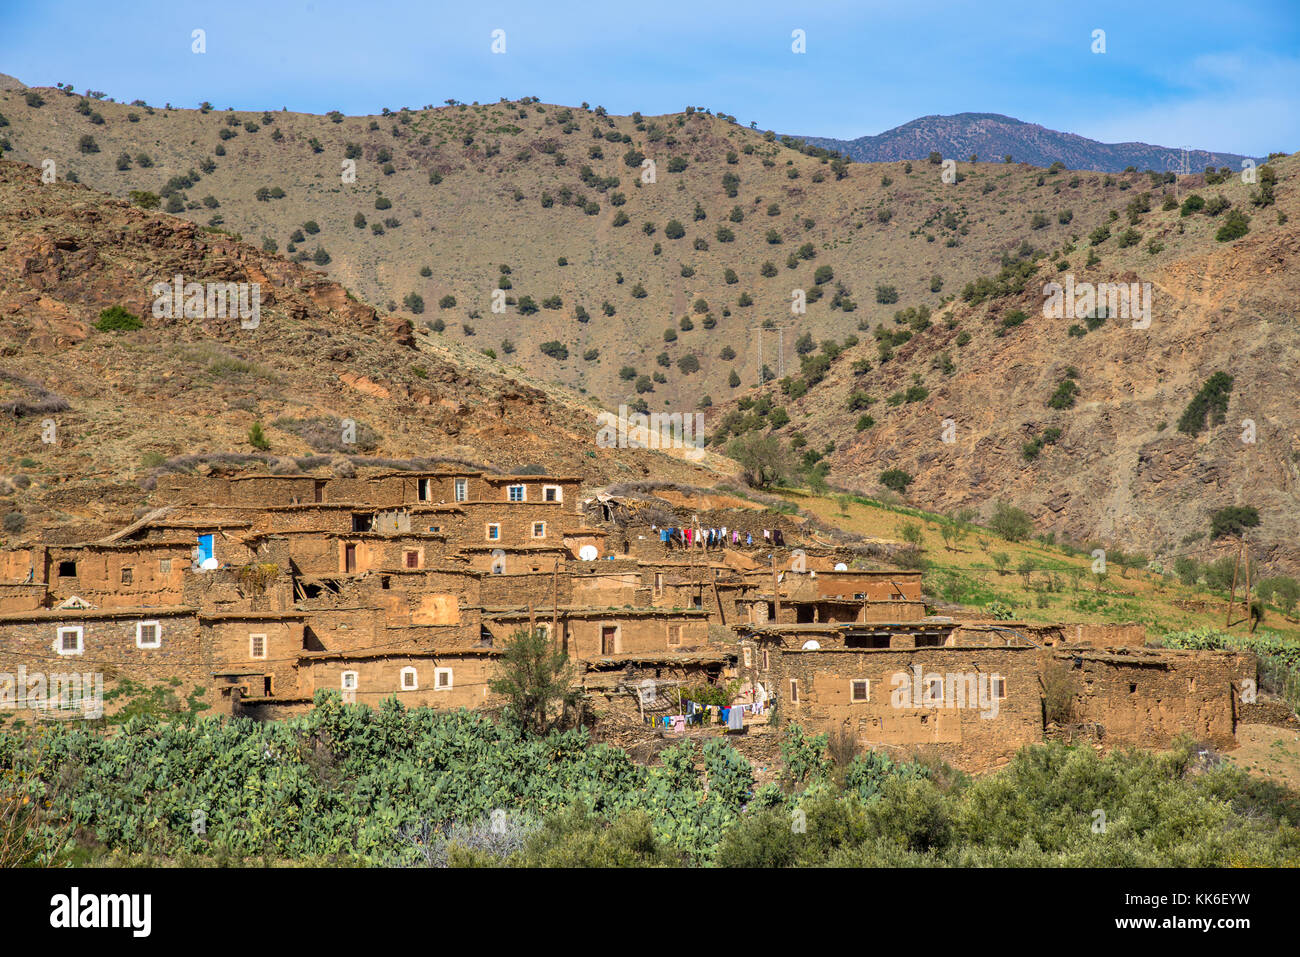 Dorf in imlill Tal zu tiz n Test, Maroc Stockfoto